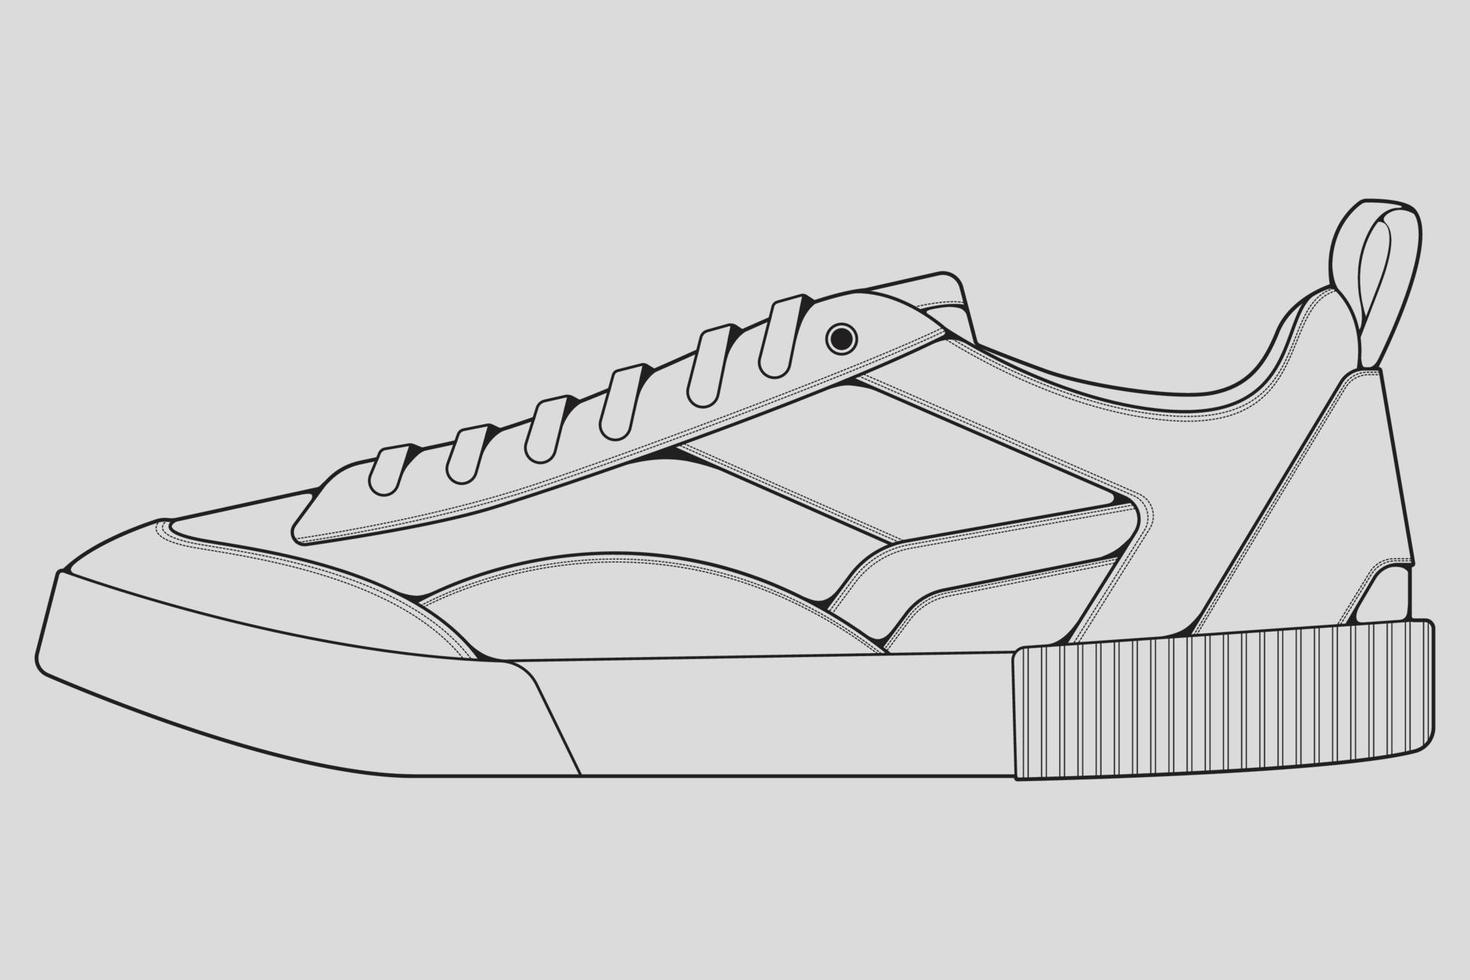 skor sneaker kontur ritning vektor, sneakers ritade i en skiss stil, svart linje sneaker utbildare mall kontur, vektor illustration.